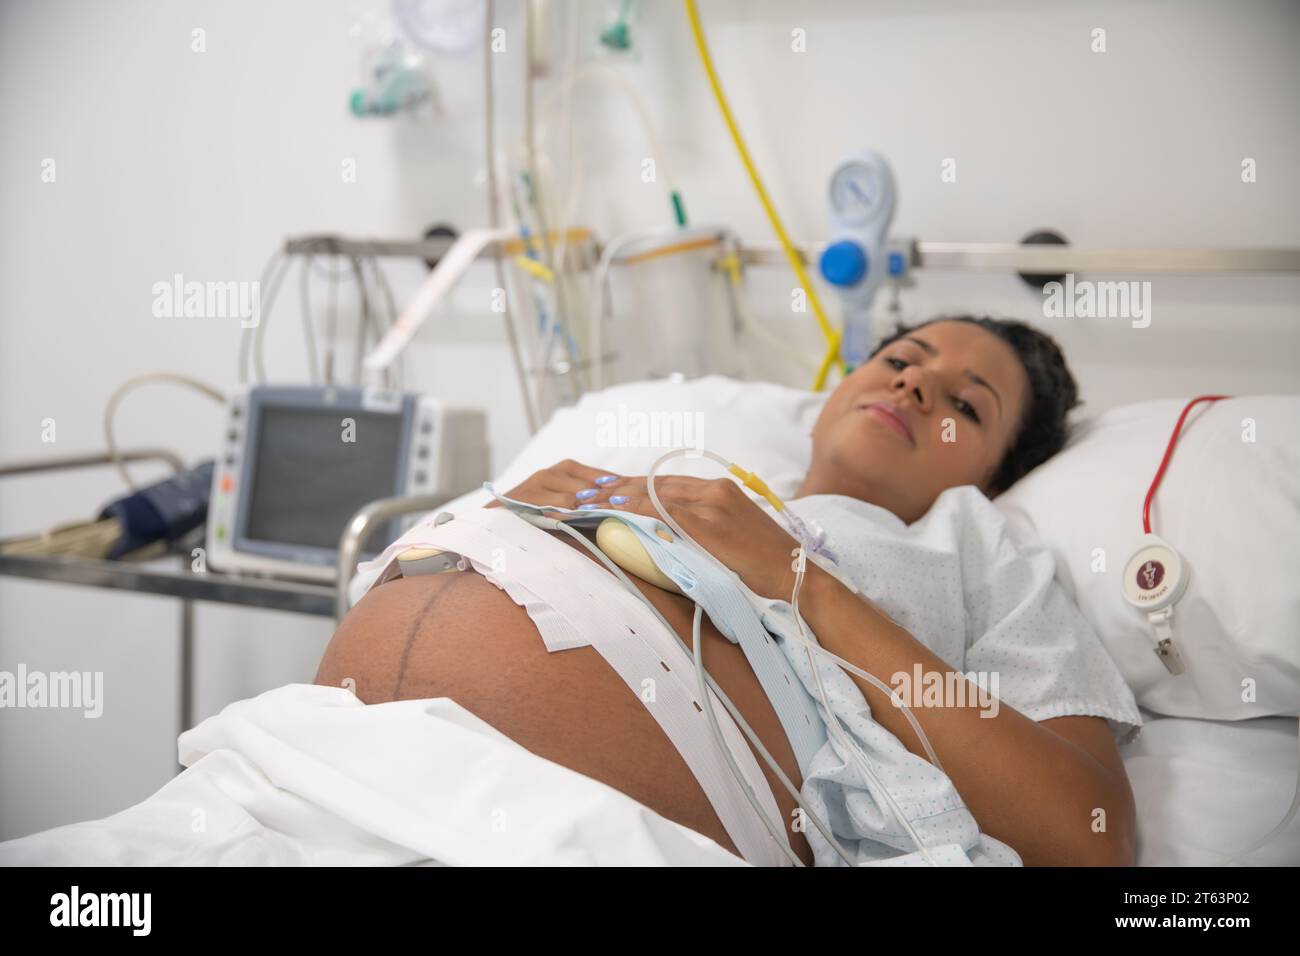 Primer plano de una mujer embarazada serena que descansa en una cama de hospital, conectada a dispositivos médicos, enfatizando la paz y la confianza en la atención médica Foto de stock